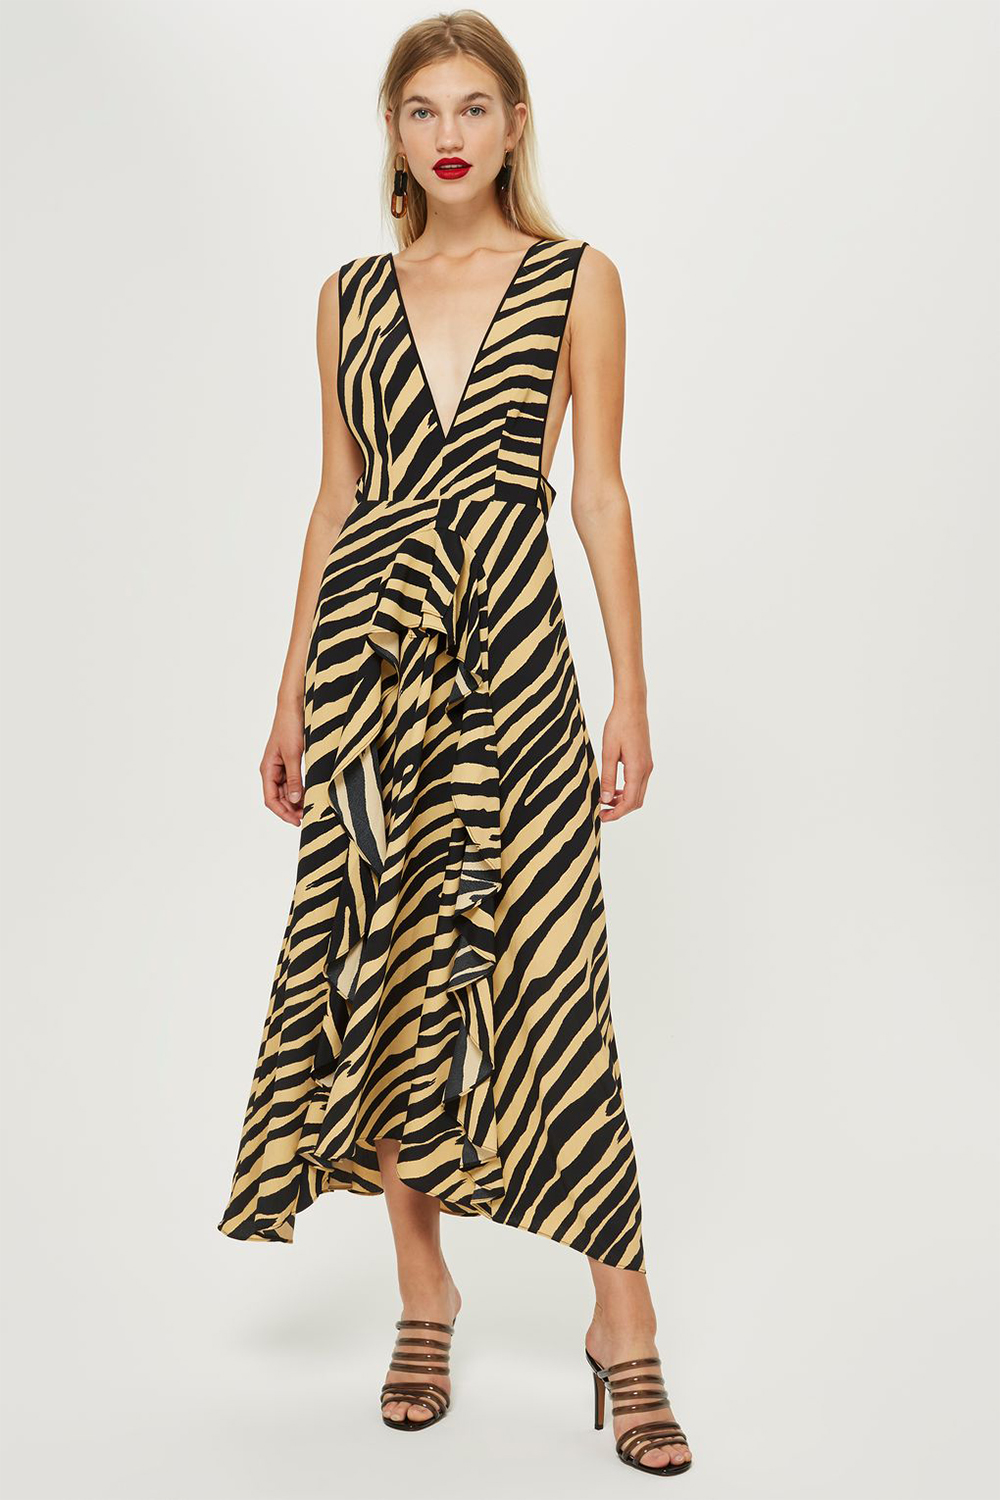 topshop tiger dress